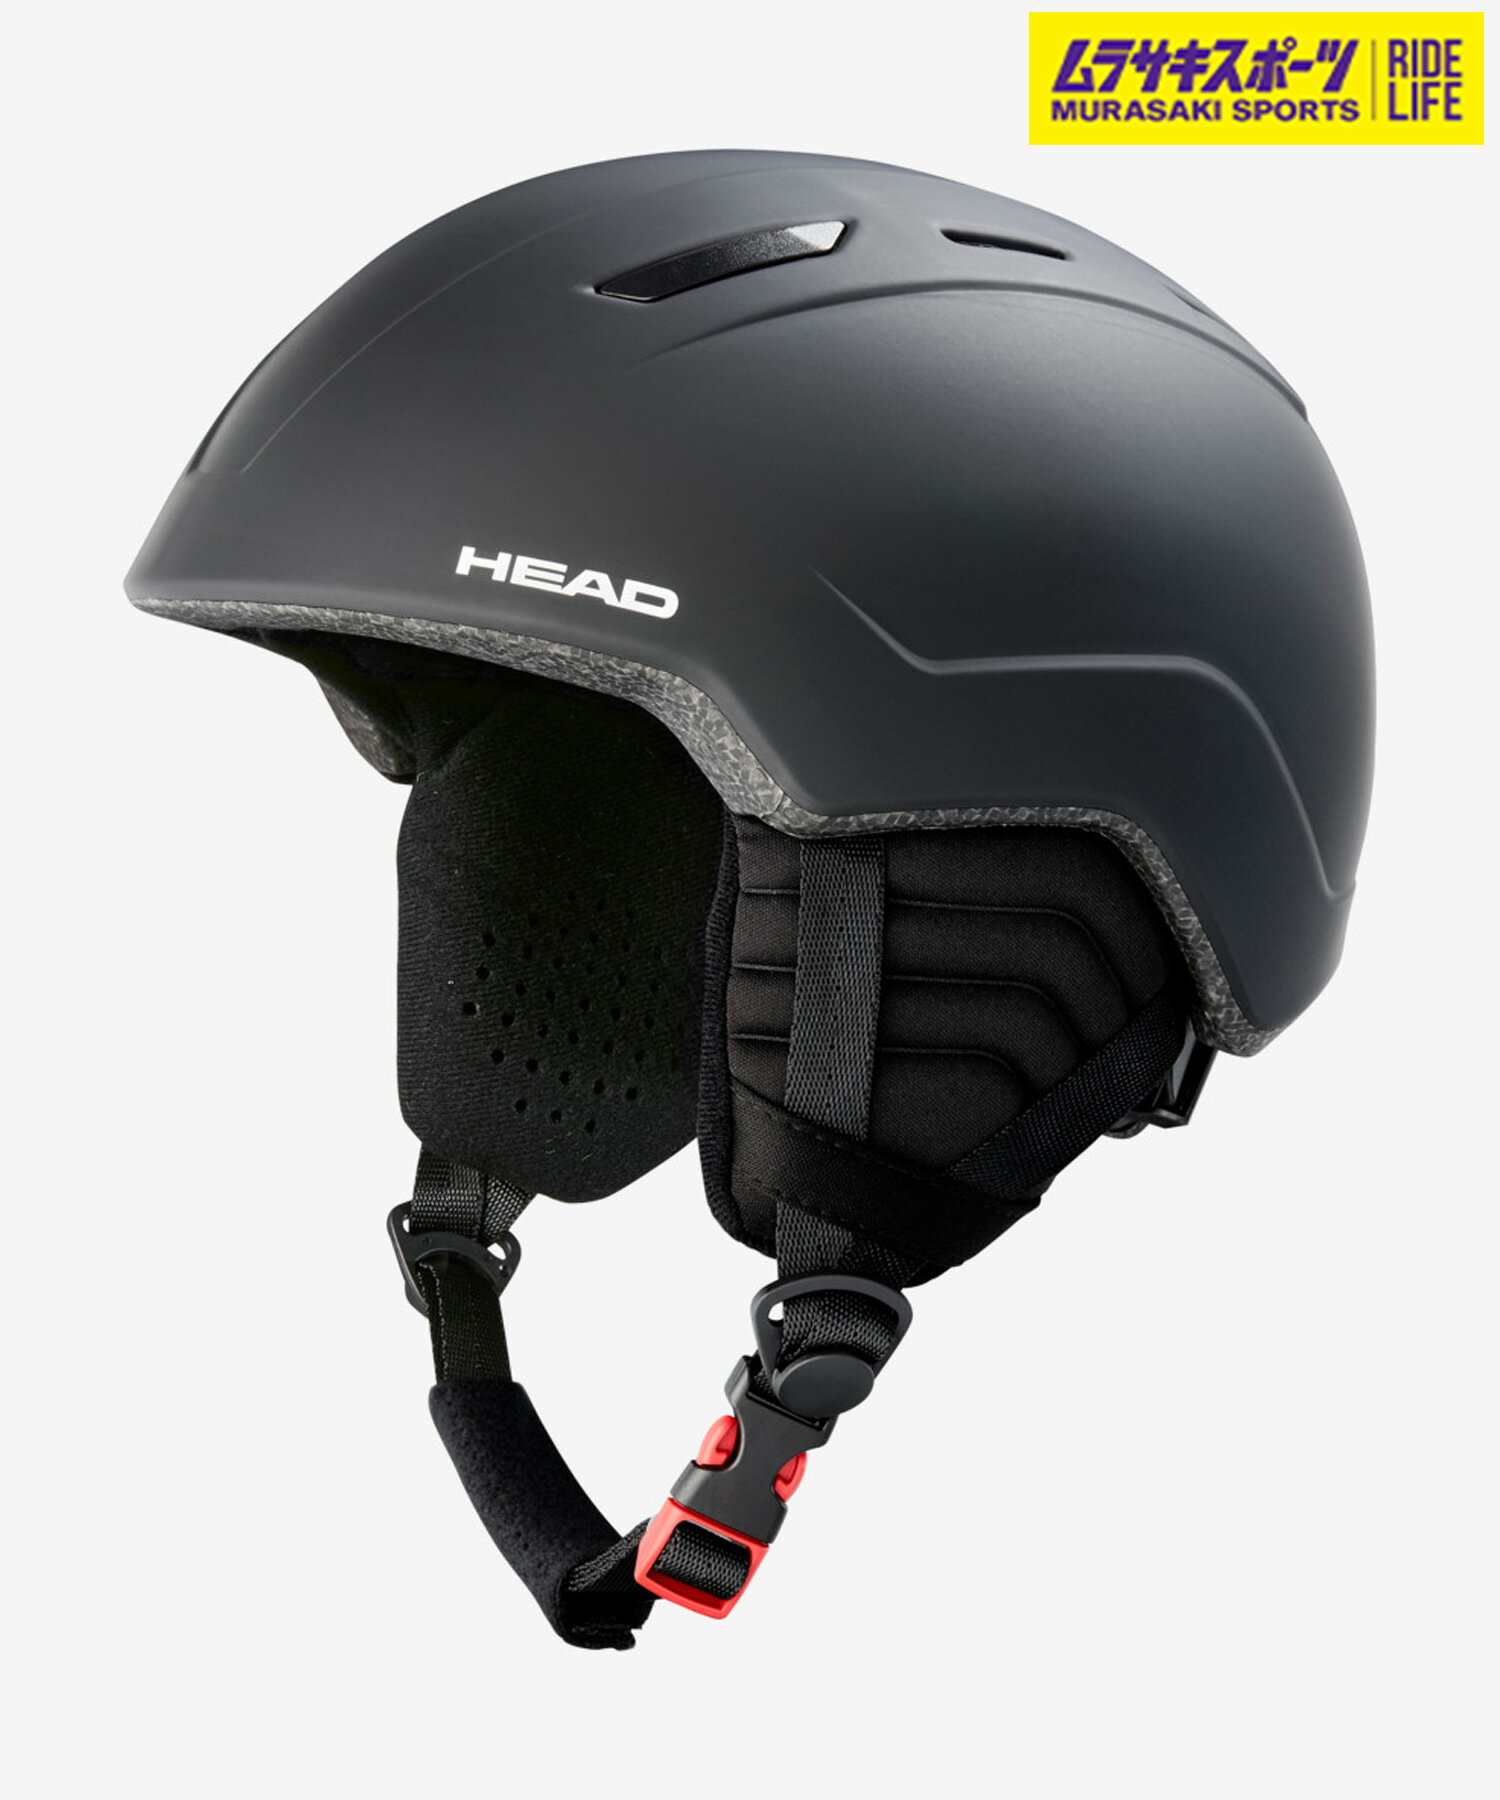 【HEAD】ヘッド スノーボード ヘルメット キッズ大人用に退けをとらない機能と保護性能を持つキッズ用ヘルメット。キッズ用ヘルメットのMOJOは、HEADの大人ラインが持つ保護機能、スタイルを含む様々な特性がたっぷり詰め込まれている。ヘルメットのサイズは2次元での調整が可能で、着け心地の良さはもちろんのこと、成長の早いキッズに合わせて調整が効く仕様となっている。柔らかいインナー、取り外し可能なイヤーパッド、そして通気性の良さがキッズに快適さと挑戦への自信を与え、安全なライディングが自然なものとなる。≪商品詳細≫■機能/特徴■・インモールド・テクノロジー・マイクロフリース・HEAD 2D フィット・サーマル・ベンチレーション・キッズ専用インナー・EN 1077：2007 CLASS B■サイズ目安■【XSS】52.0-56.0cm